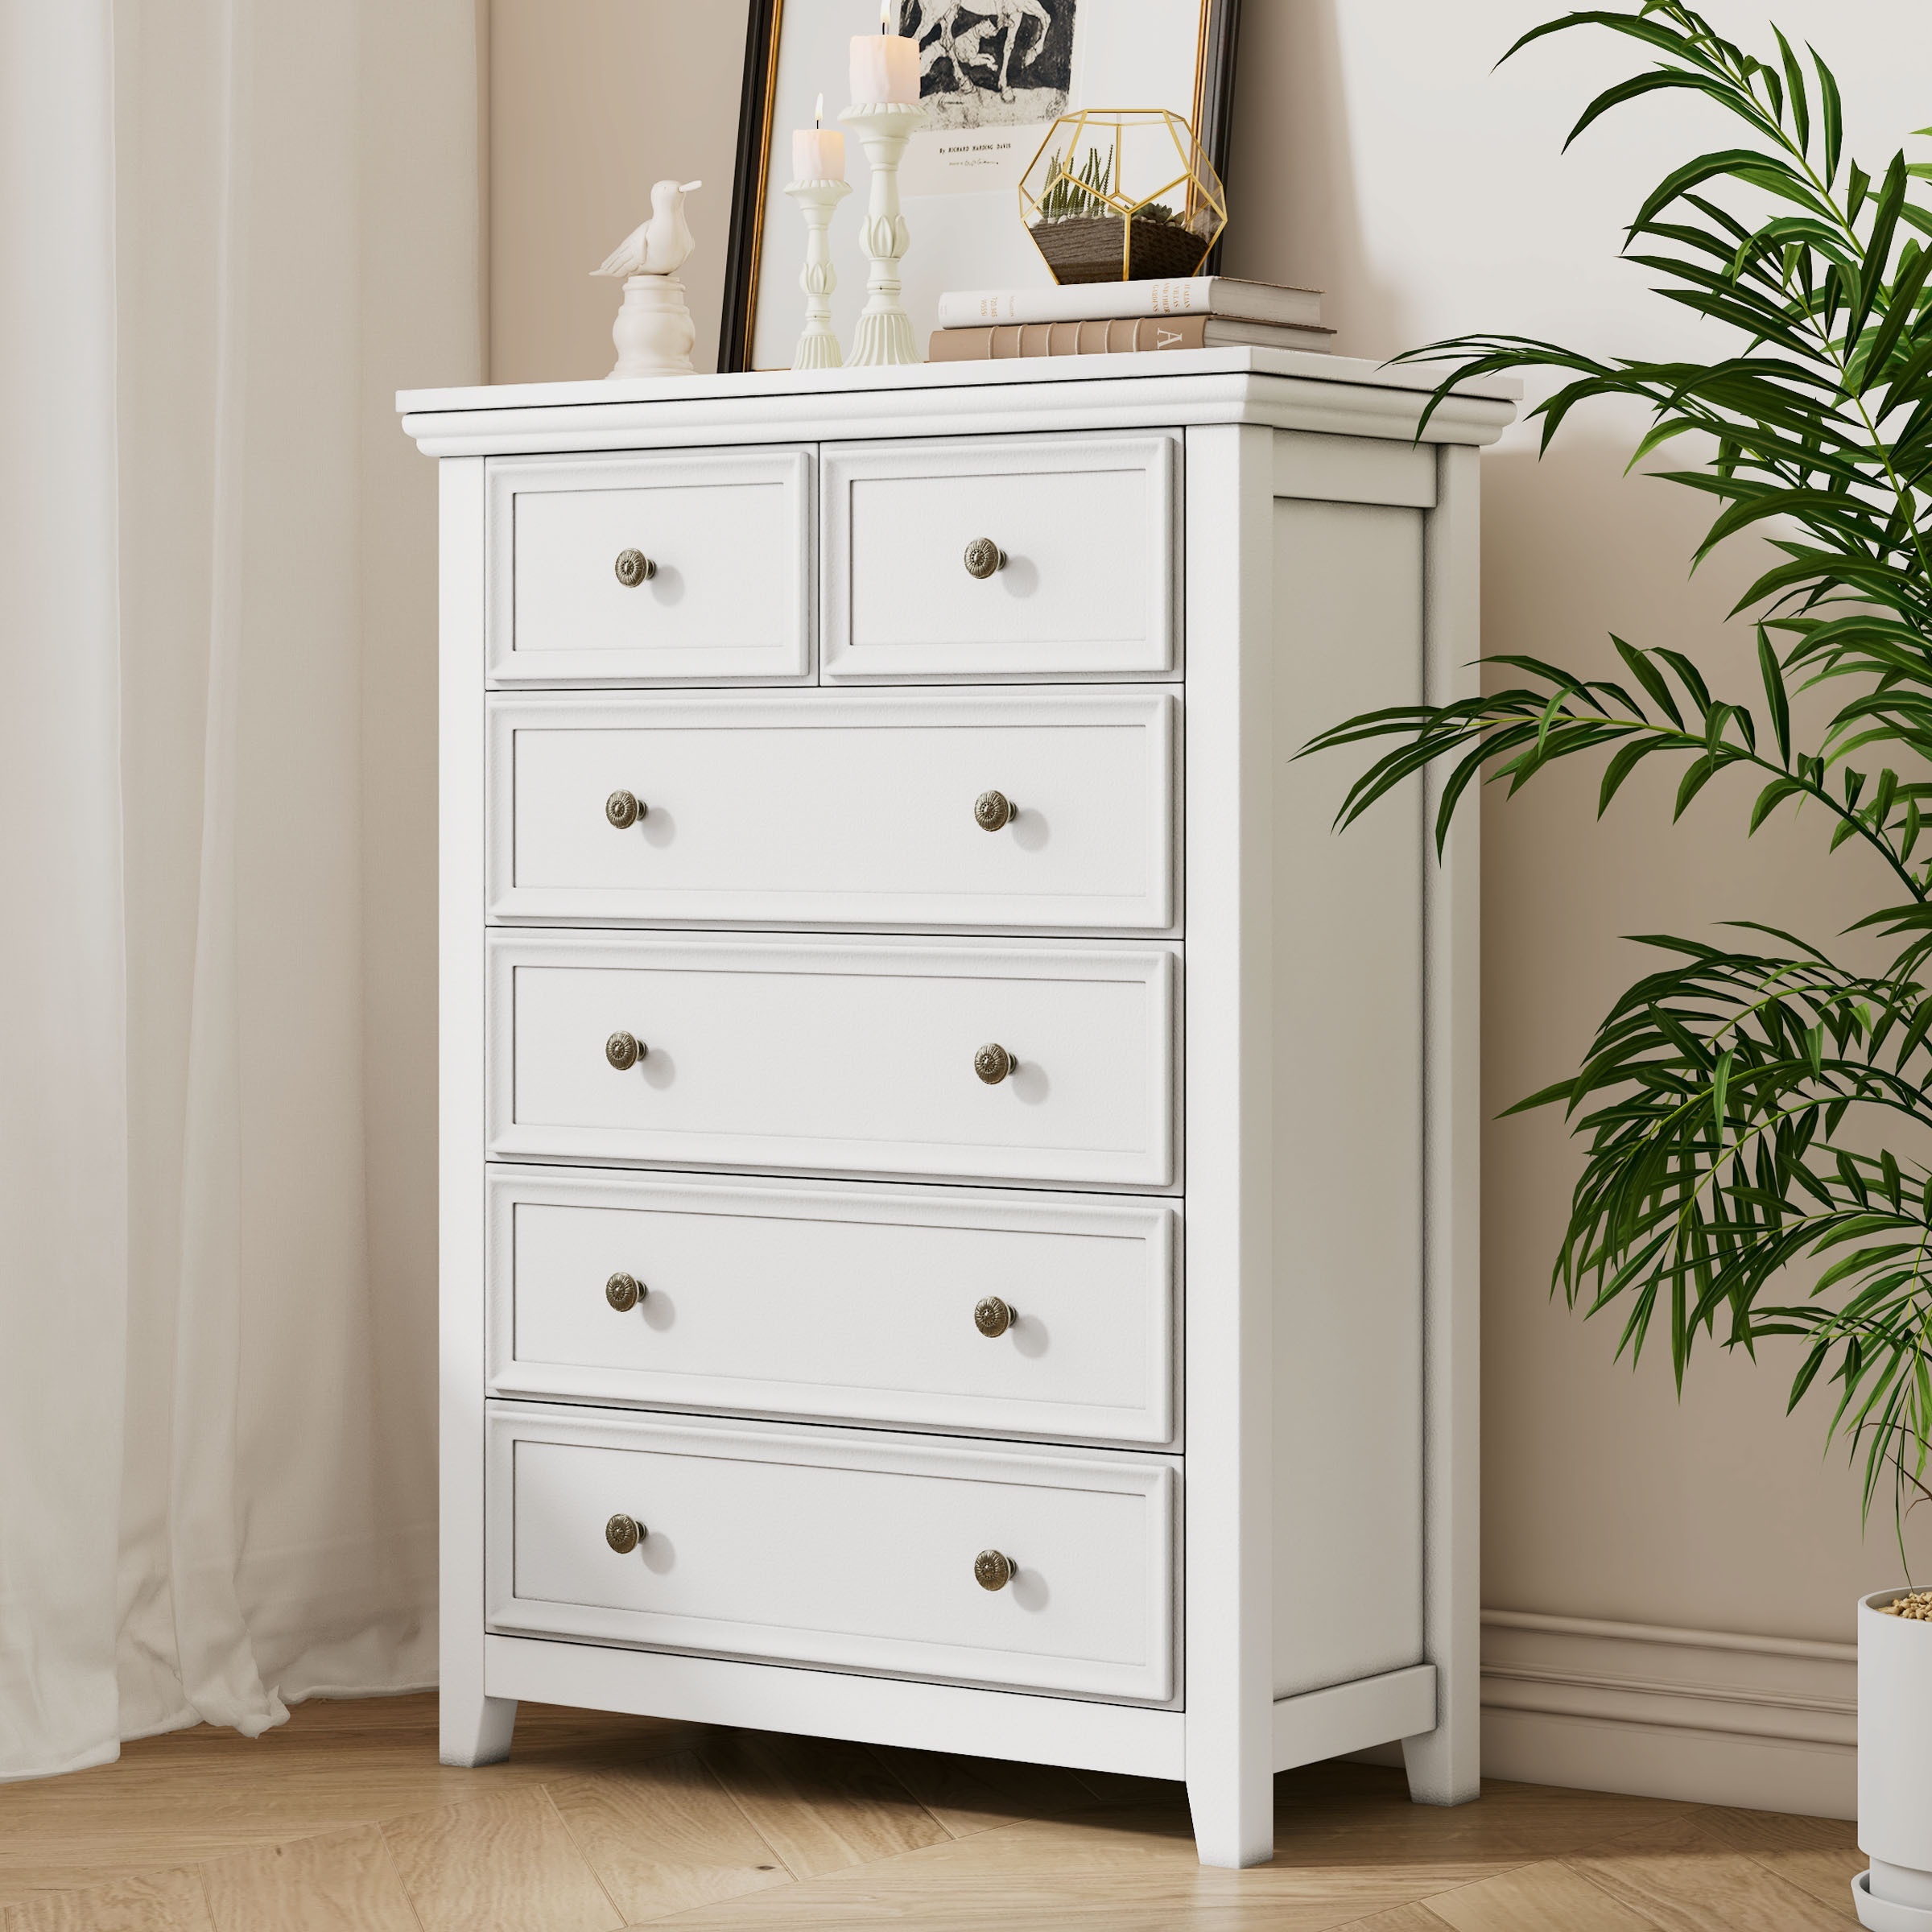 

White Dresser For Bedroom, 6-drawer Dreeser, 6 Chest Of Drawers Dresser, Tall Nightstand Modern Chest Dresser For Bedroom, Living Room, Closet, Hallway